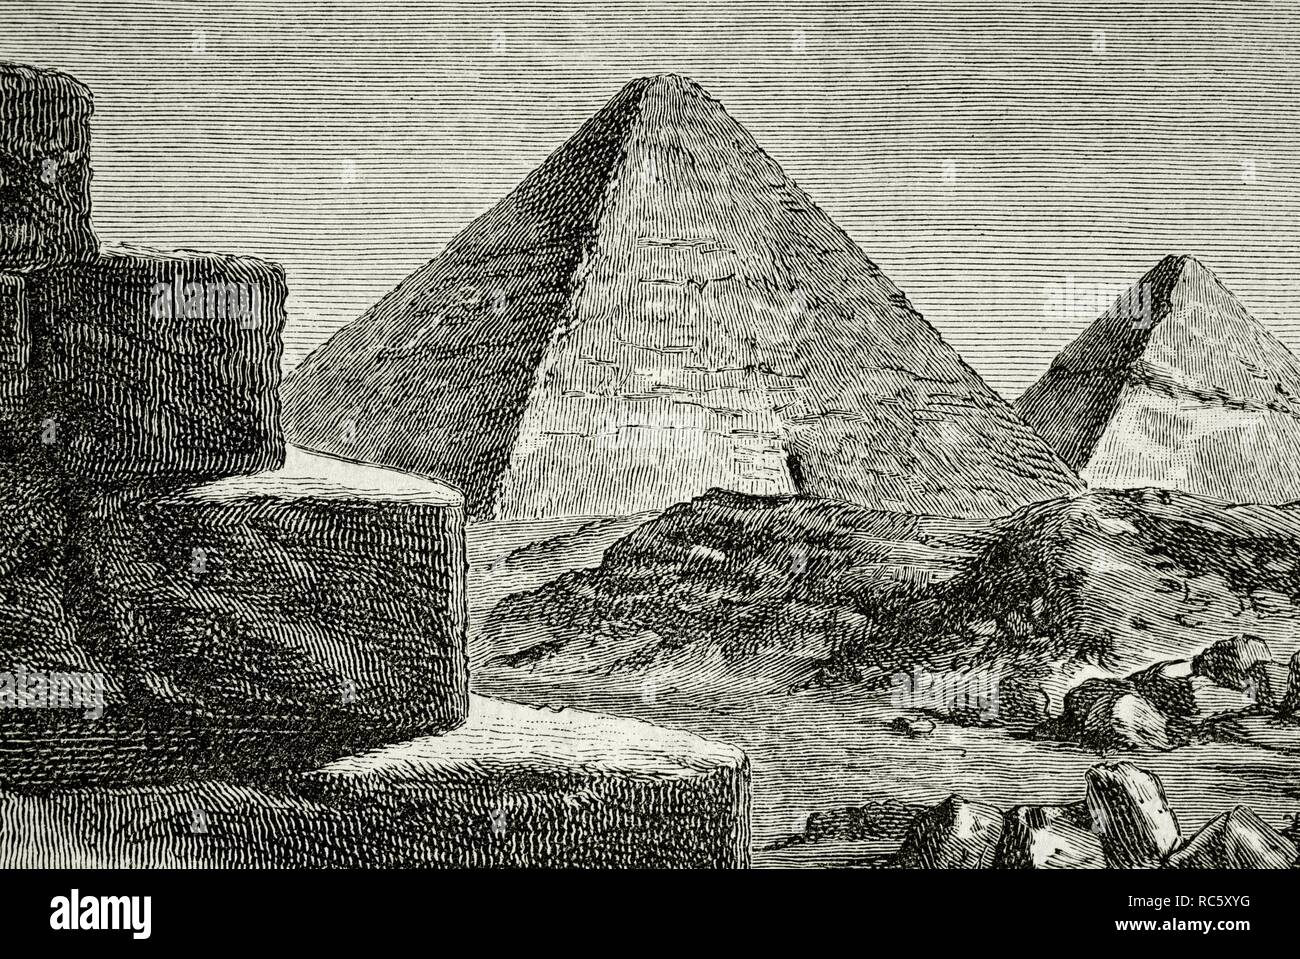 North of Africa. Ancient Egypt. Giza Pyramid complex. Old Kingdom of Egypt. 2686-21191 BC. Engraving. La Civilizacion (The Civilization), volume I, 1881. Stock Photo